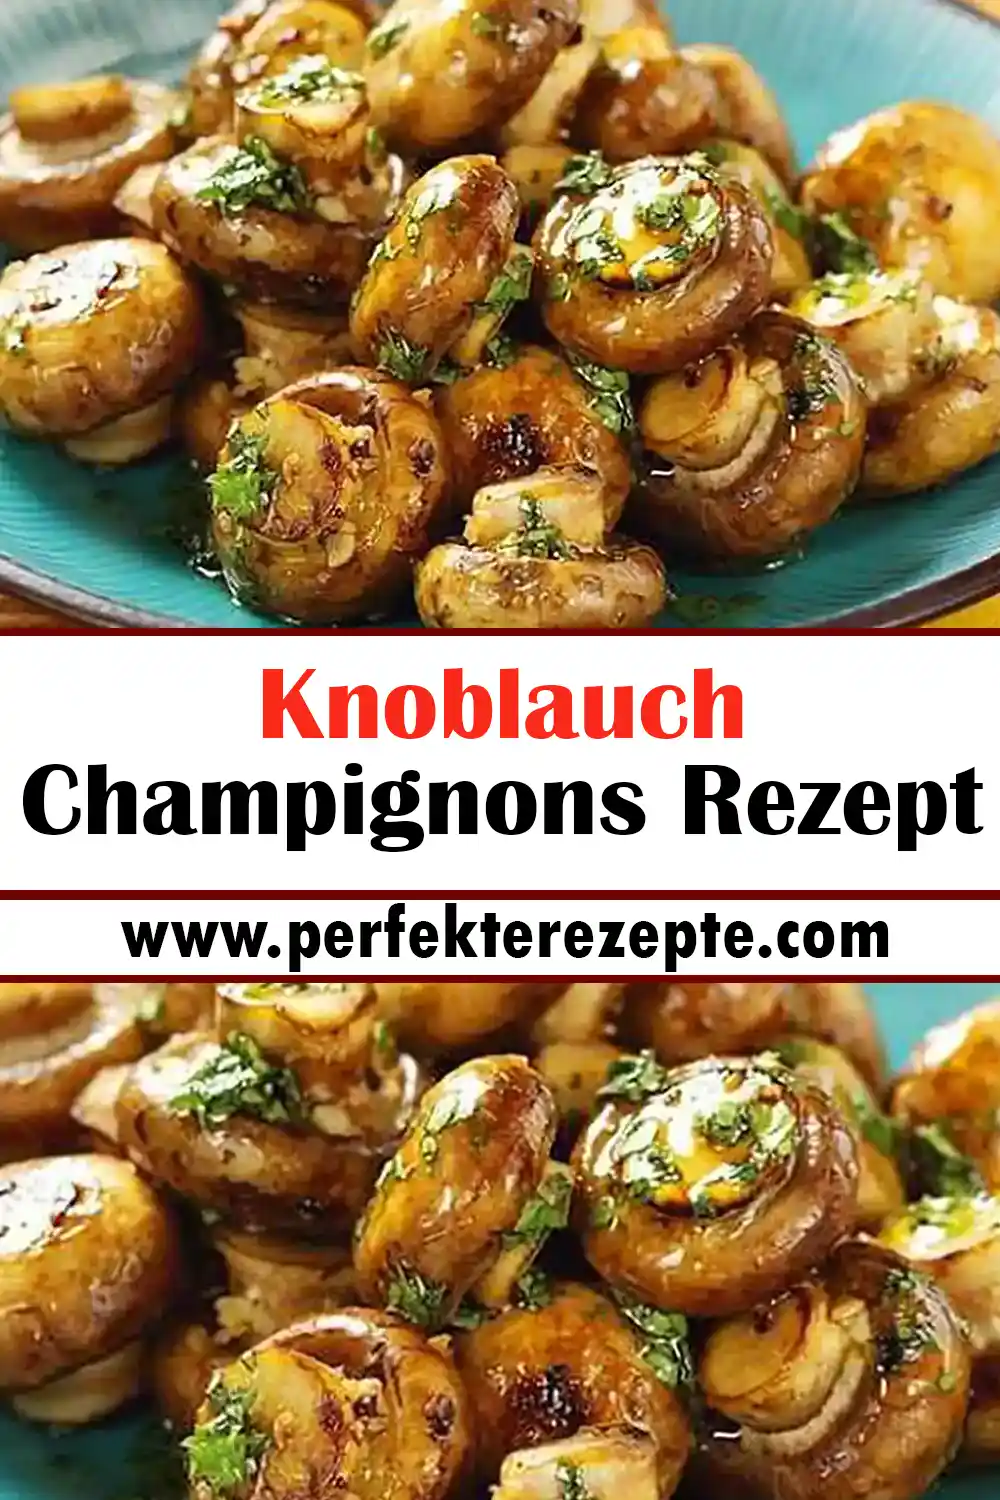 Knoblauch Champignons Rezept